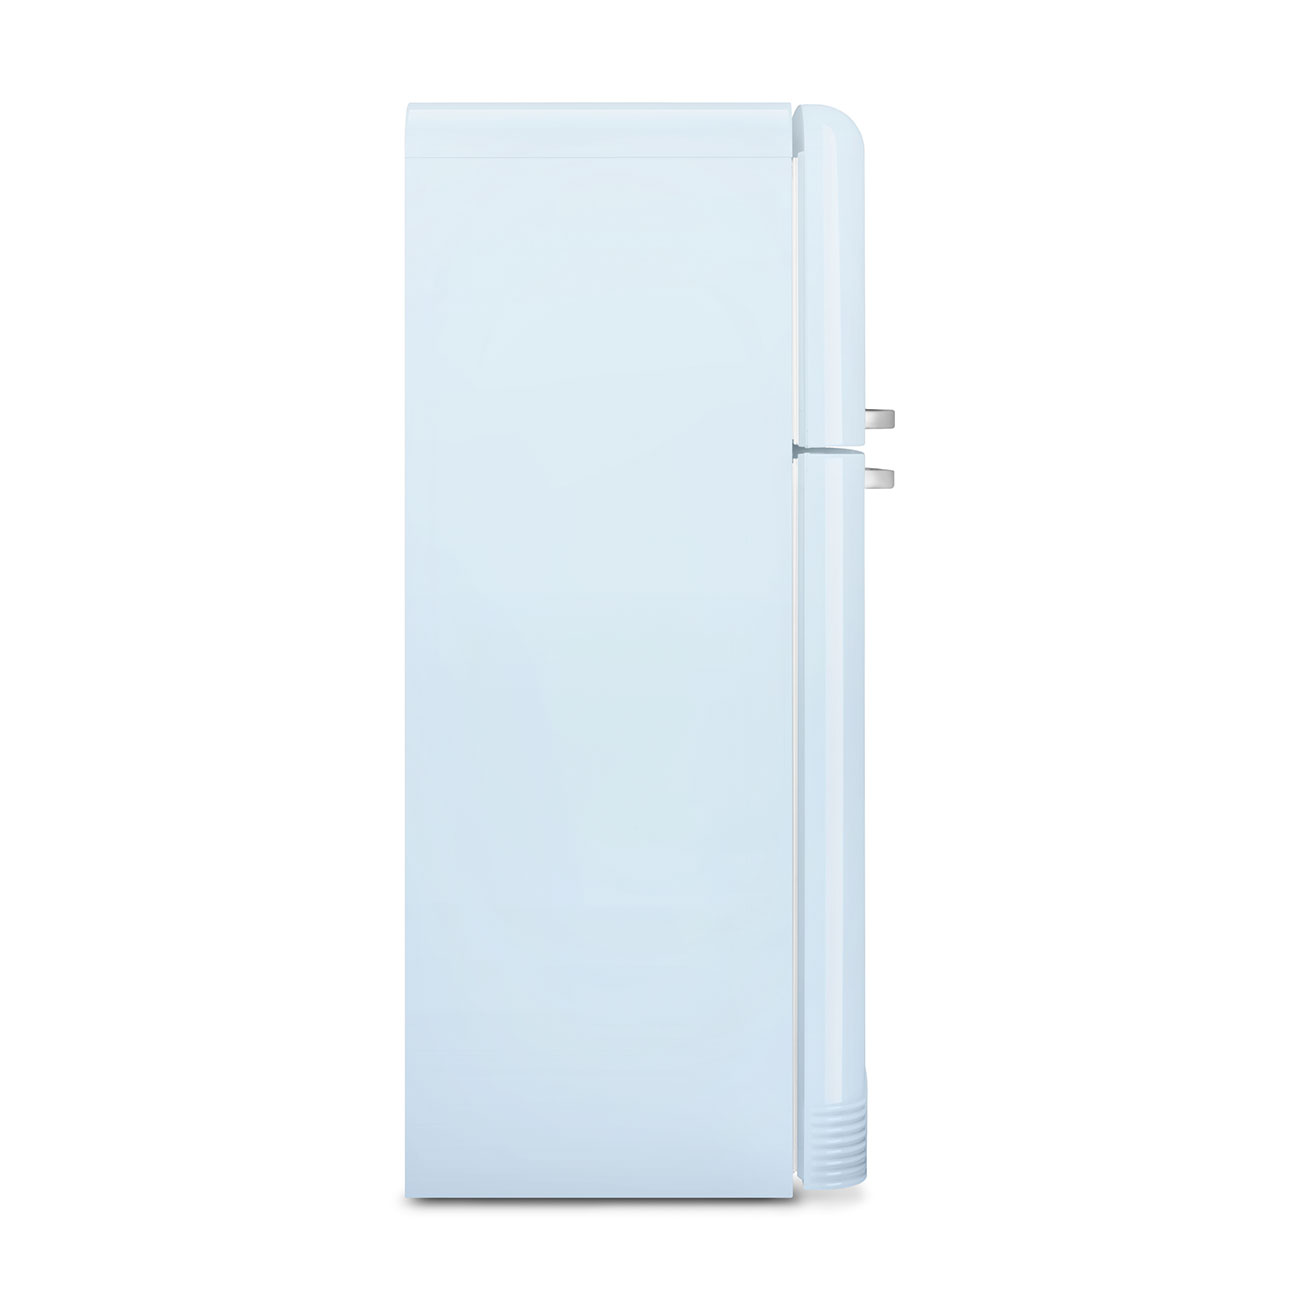 Pastel blue refrigerator - Smeg_6